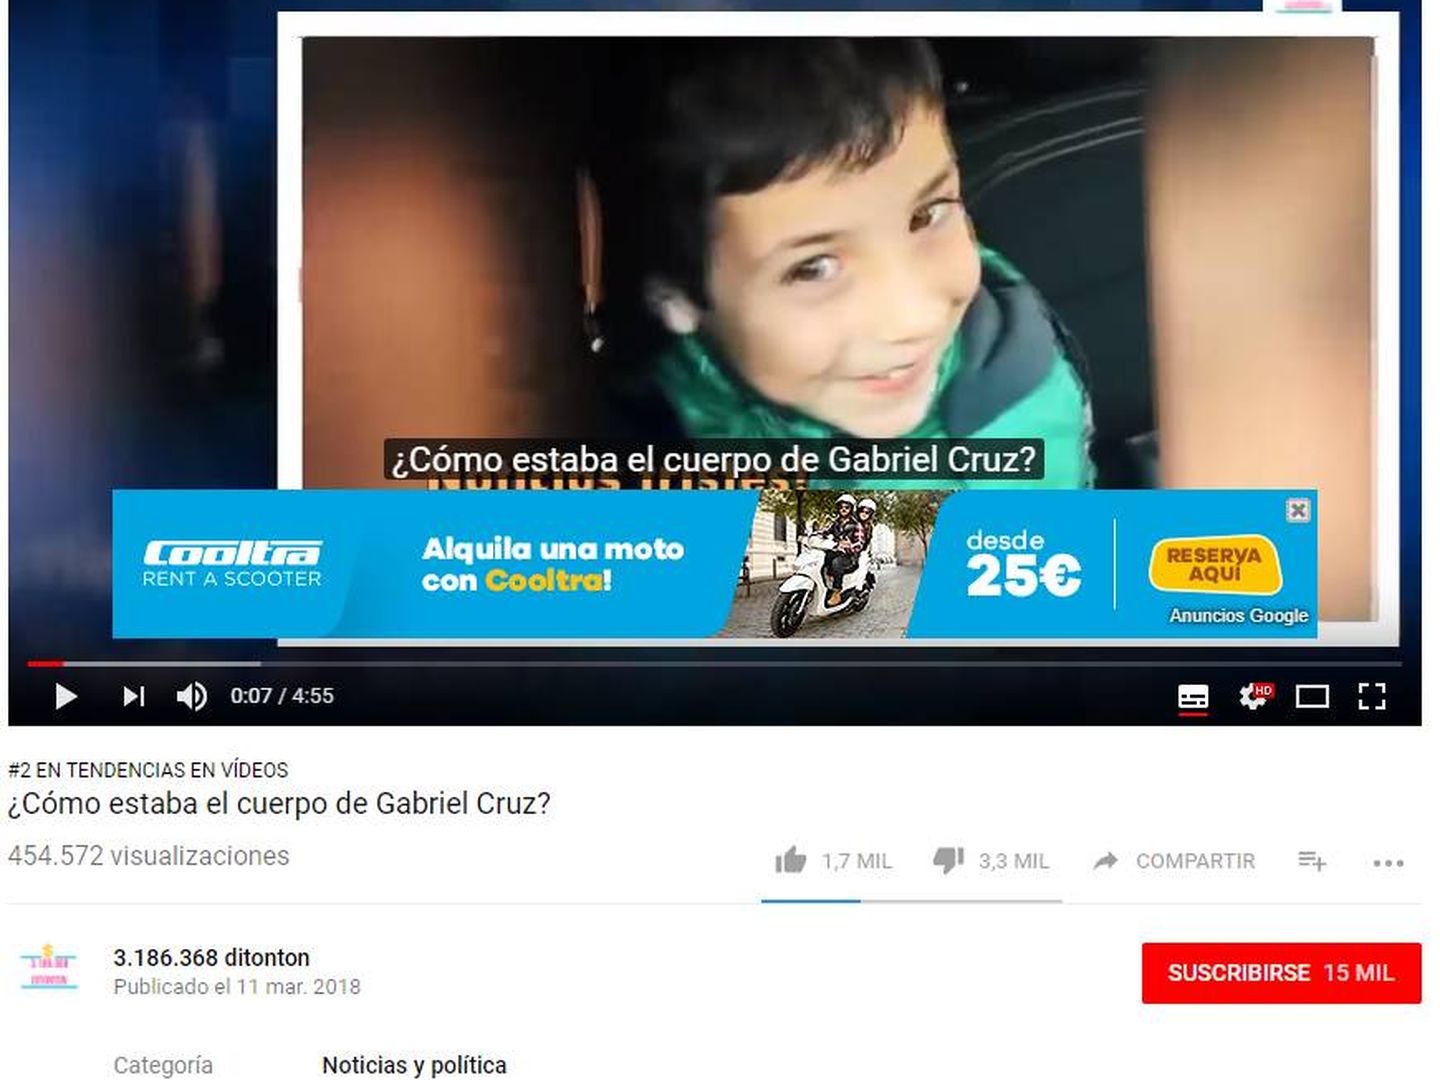 Captura del vídeo del niño con el anuncio